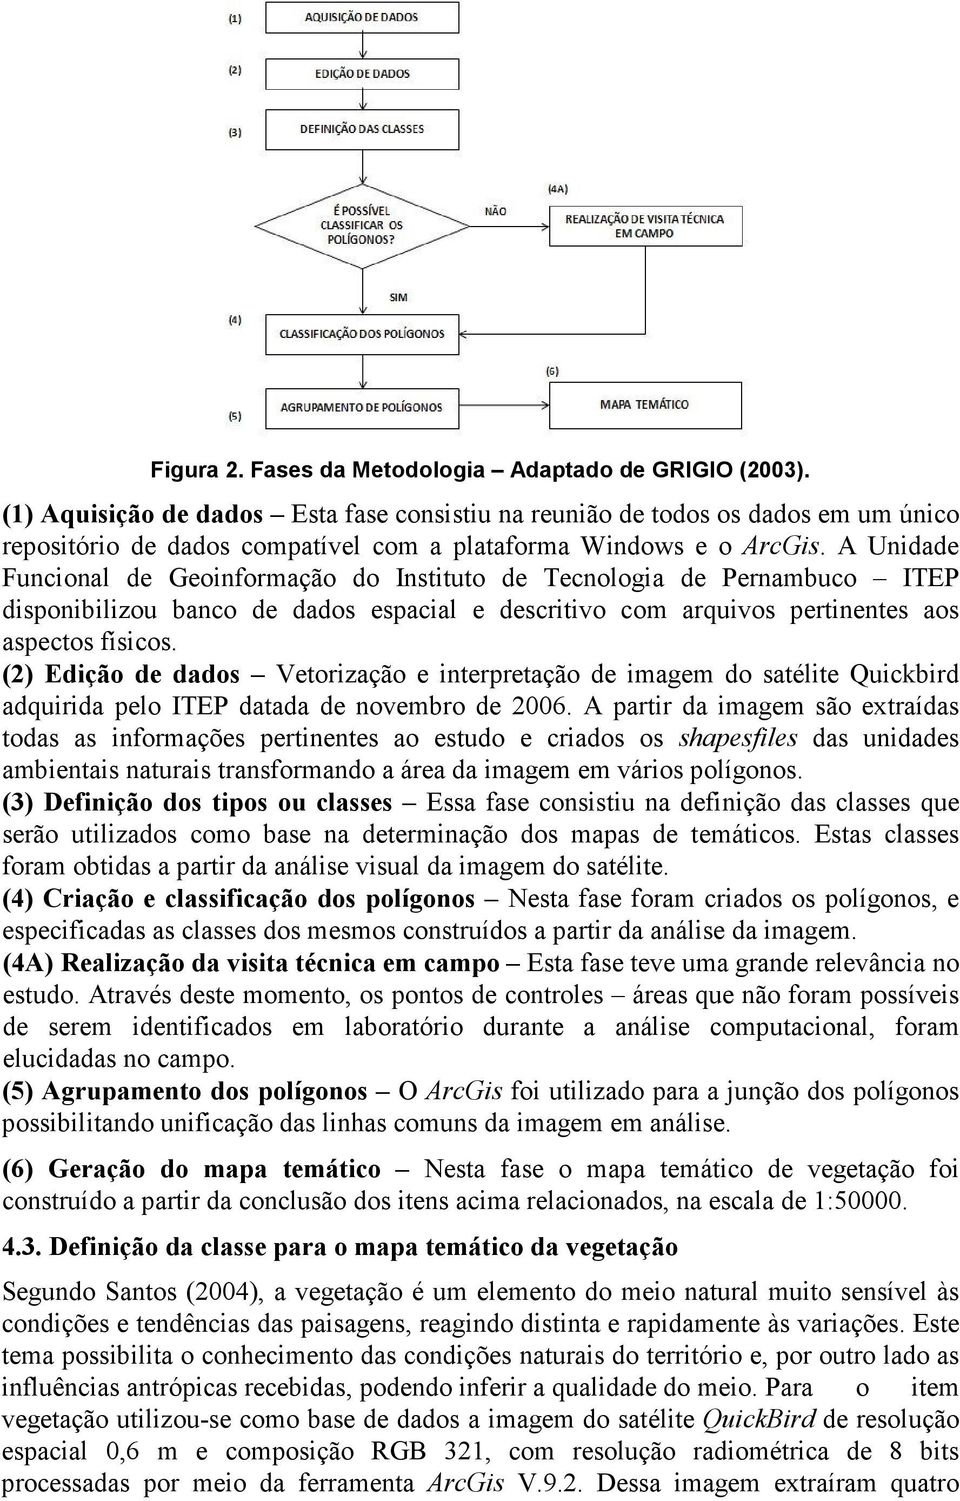 A Unidade Funcional de Geoinformação do Instituto de Tecnologia de Pernambuco ITEP disponibilizou banco de dados espacial e descritivo com arquivos pertinentes aos aspectos físicos.